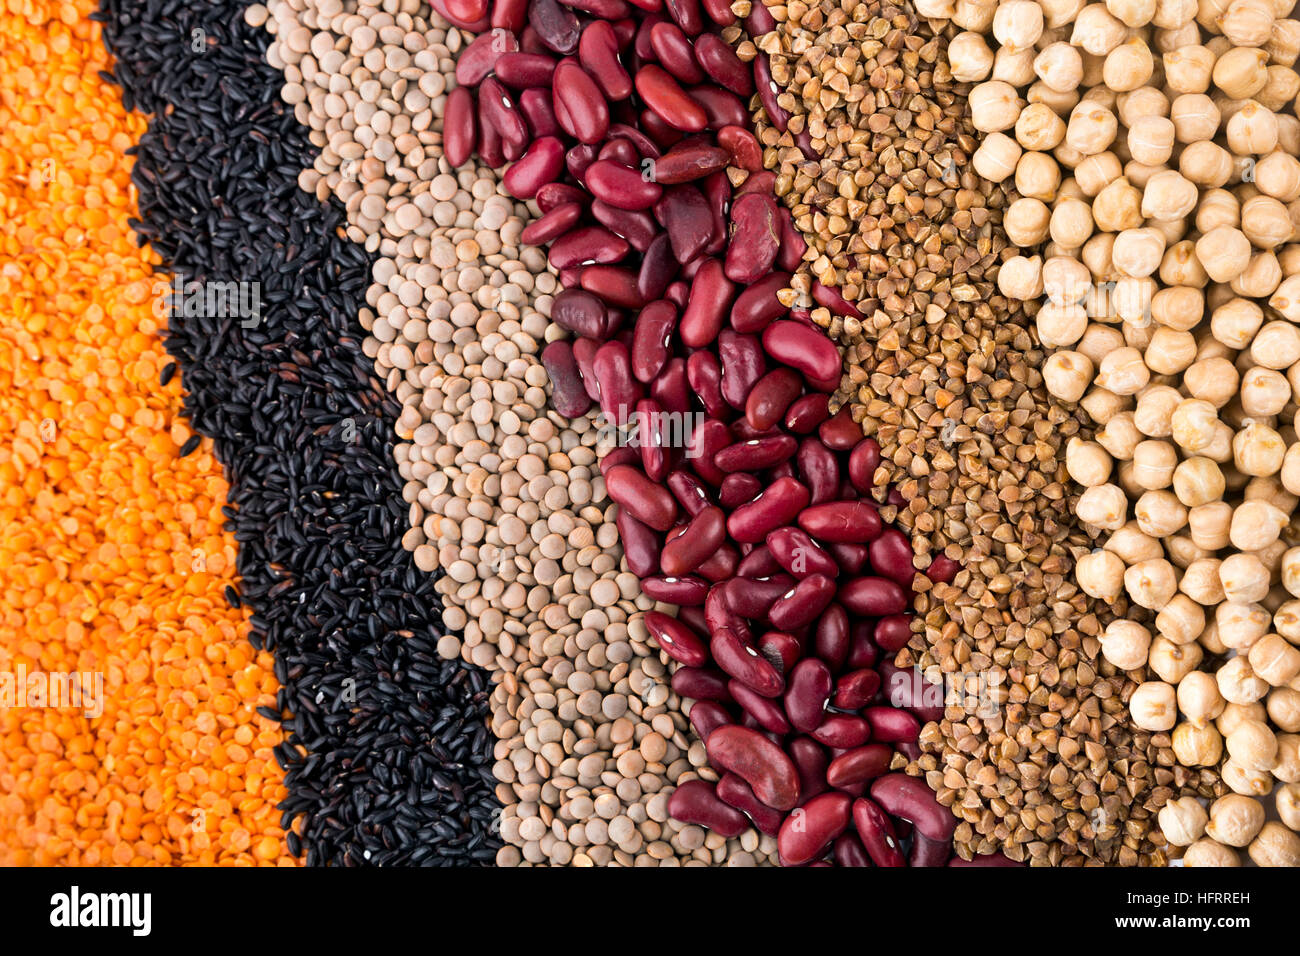 Trockene Bohnen, Getreide und Hülsenfrüchte - Speisekammer Essen Hintergrund Stockfoto